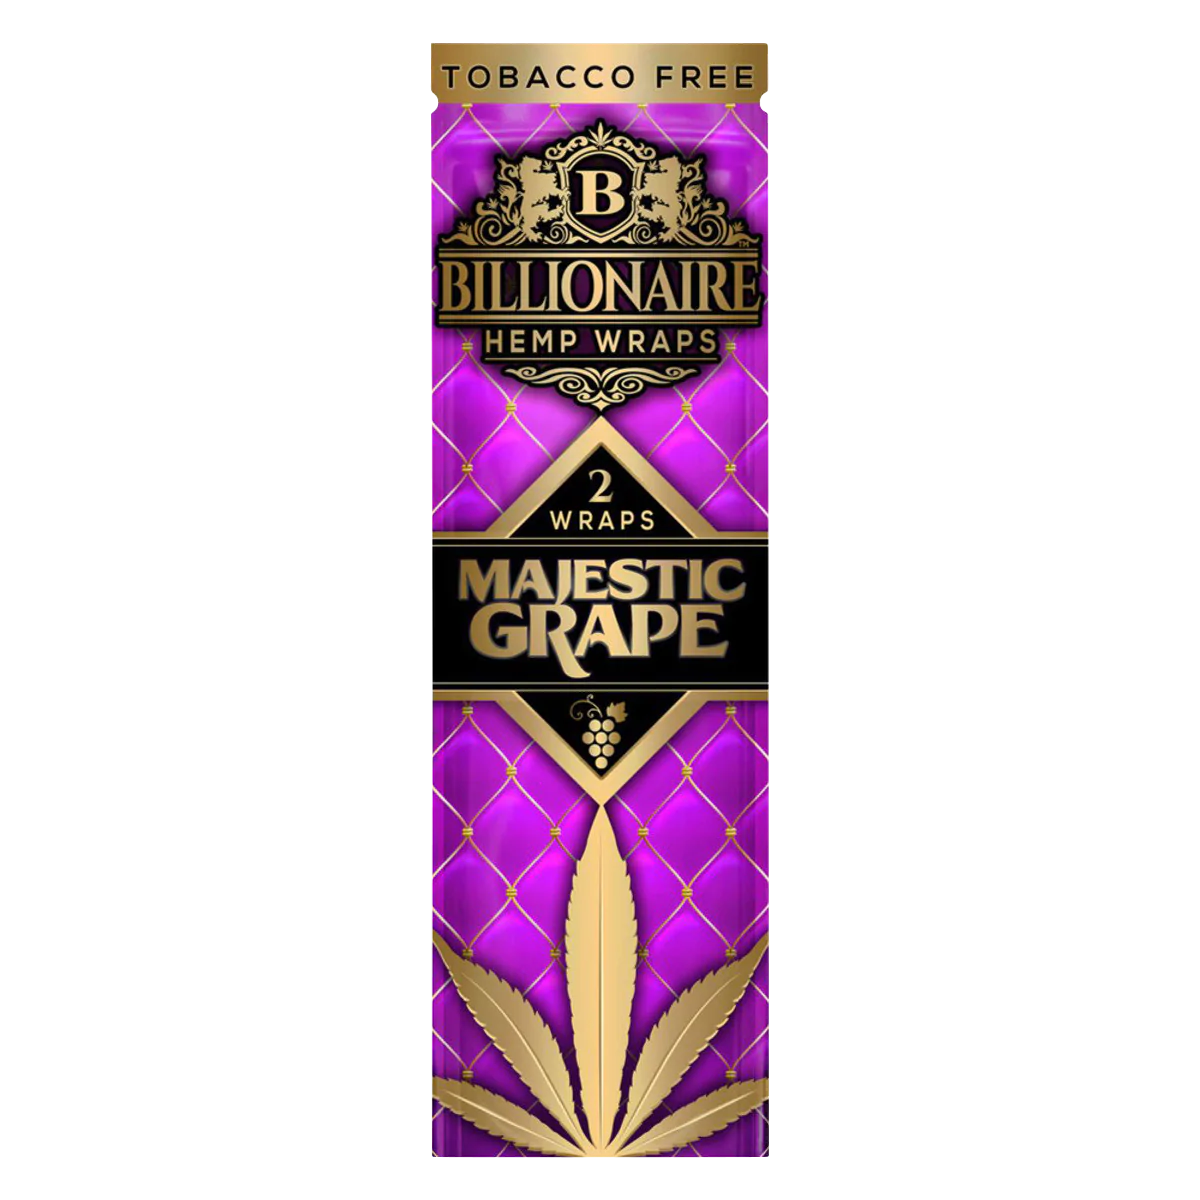 Billionaire Hemp Wraps 25 Pack, Majestic Grape Flavor, Tobacco-Free, Front View